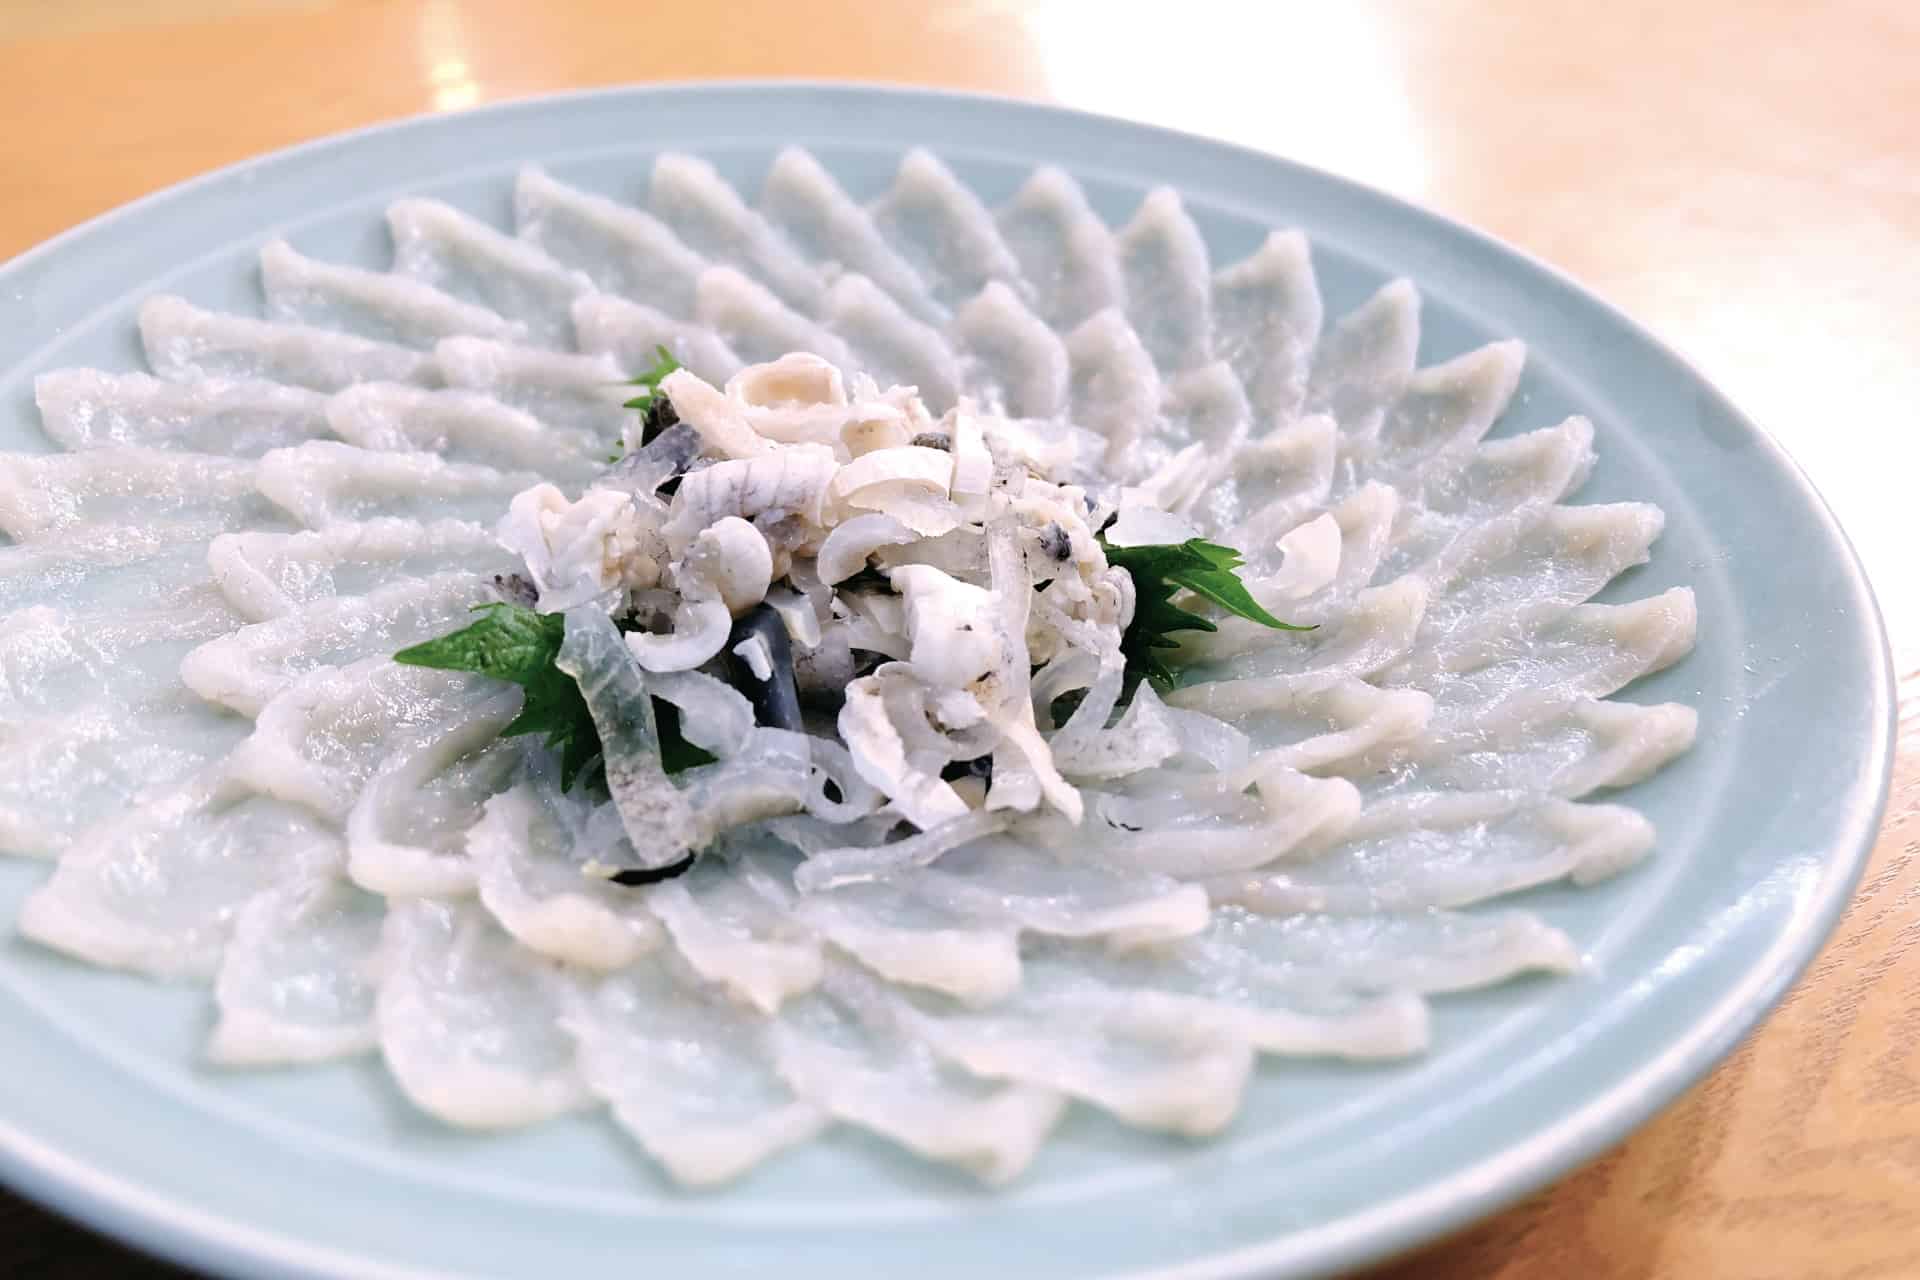 อาหาร จ.ยามากุจิ - ปลาปักเป้า (Fugu)